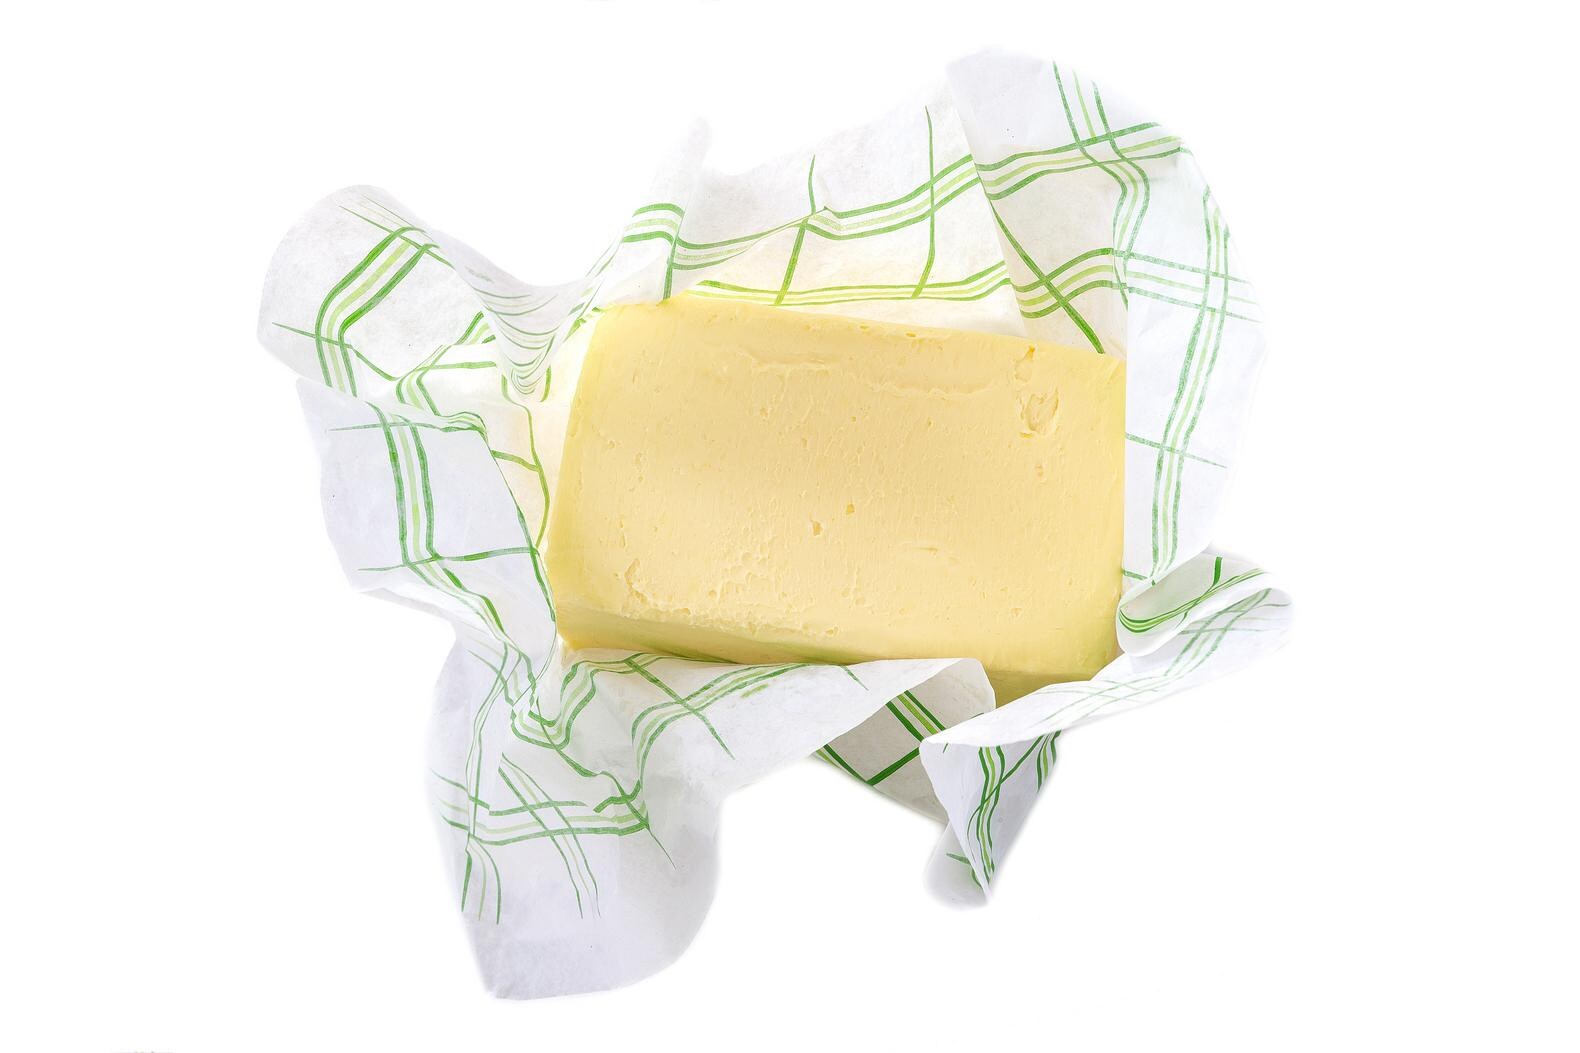 De smaak van boter